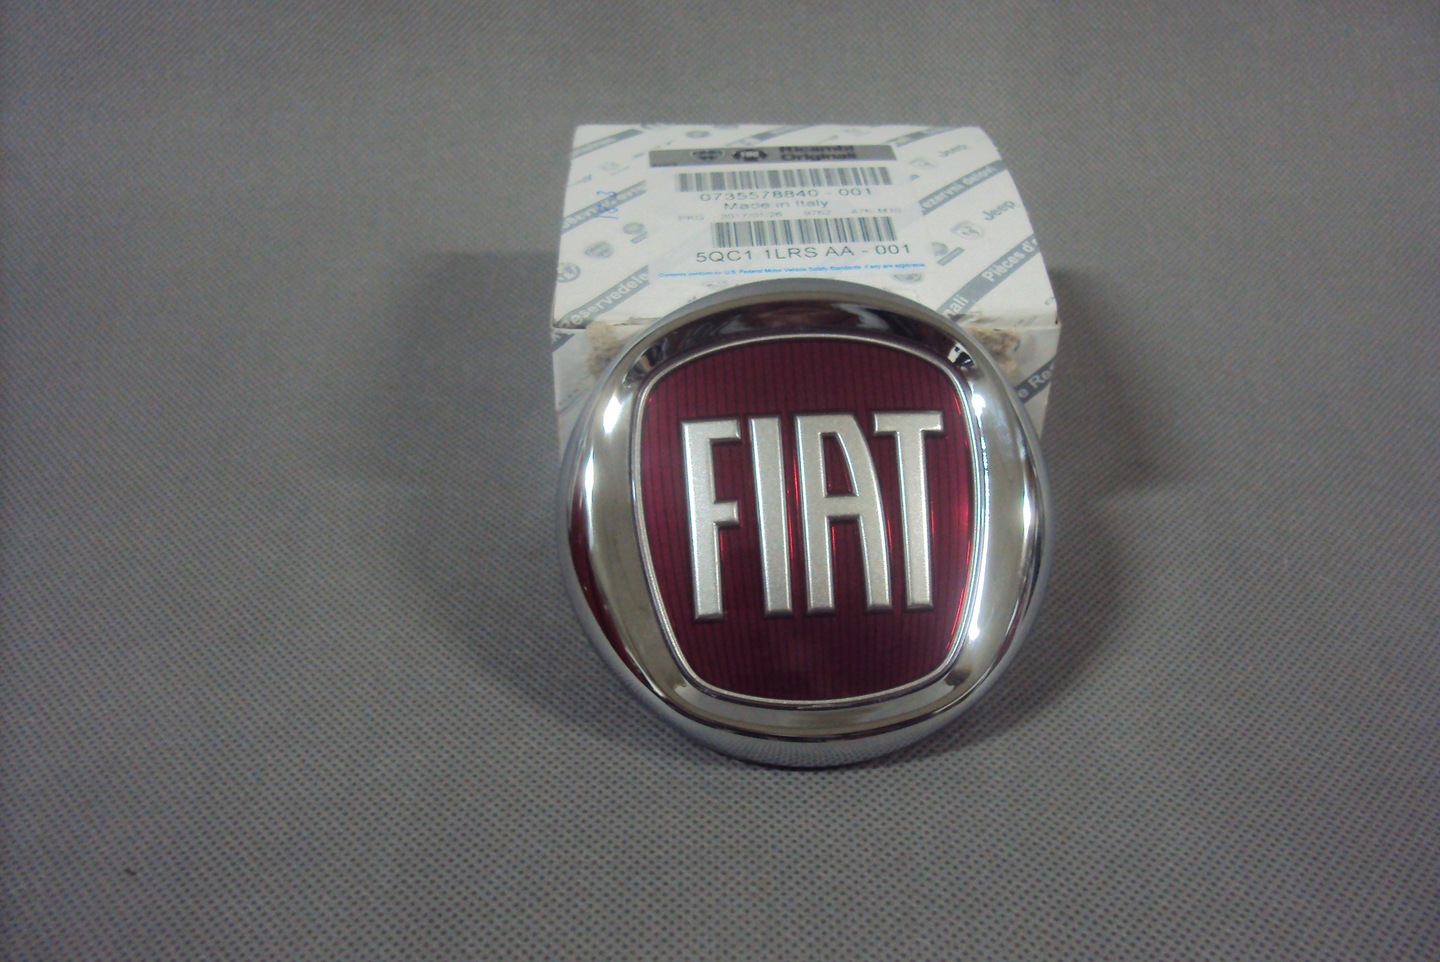 Znaczek emblemat tylny Fiat Grande Punto EVO 7069679131